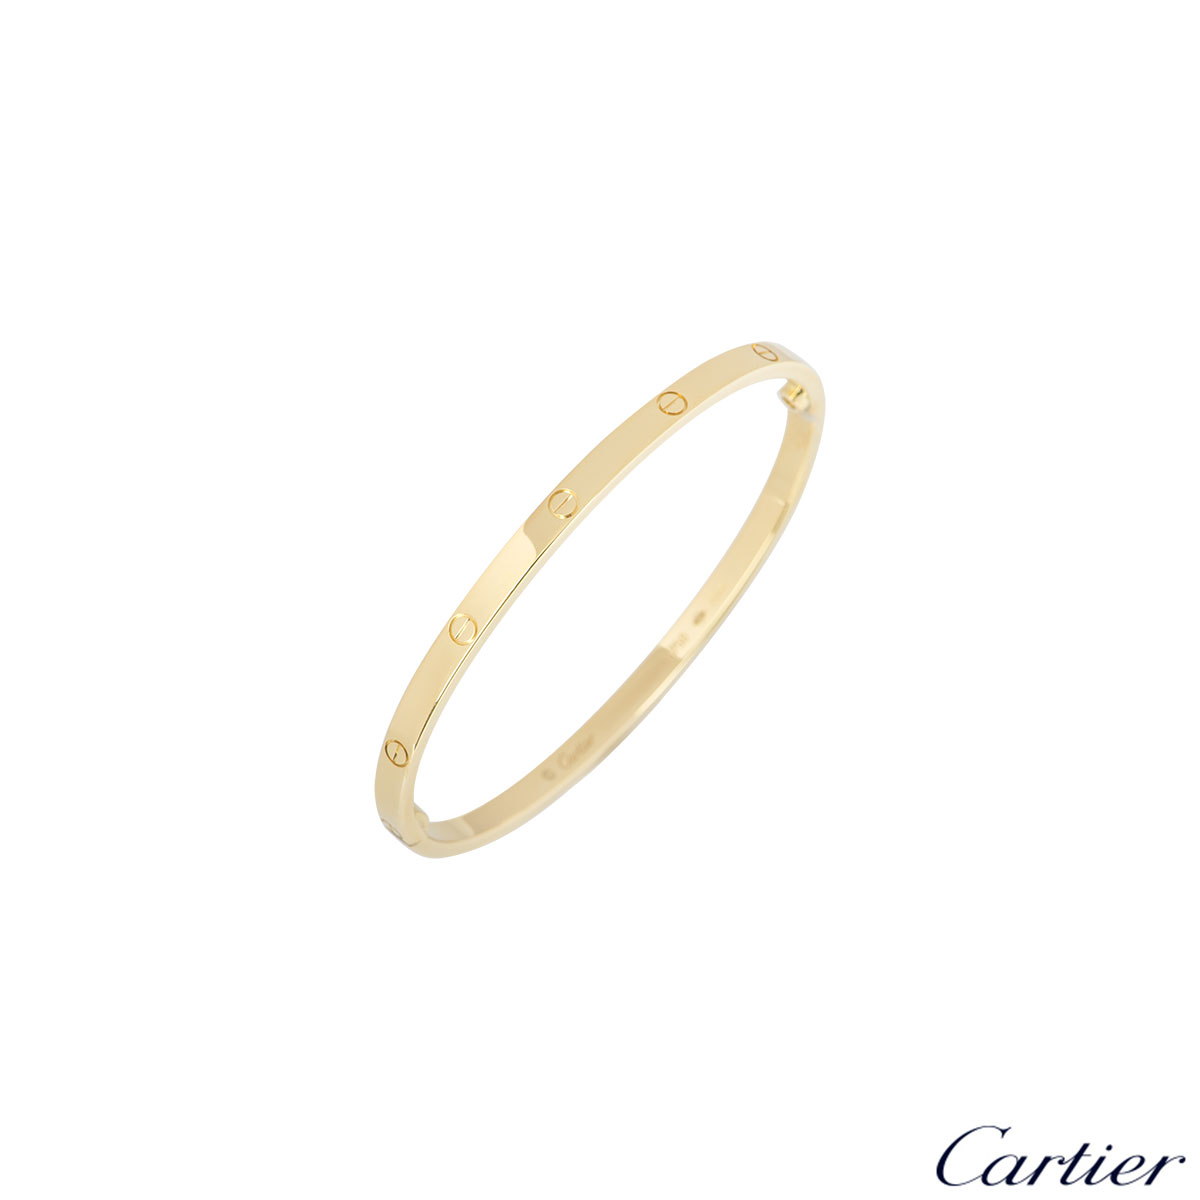 cartier love bracelet yellow gold weight